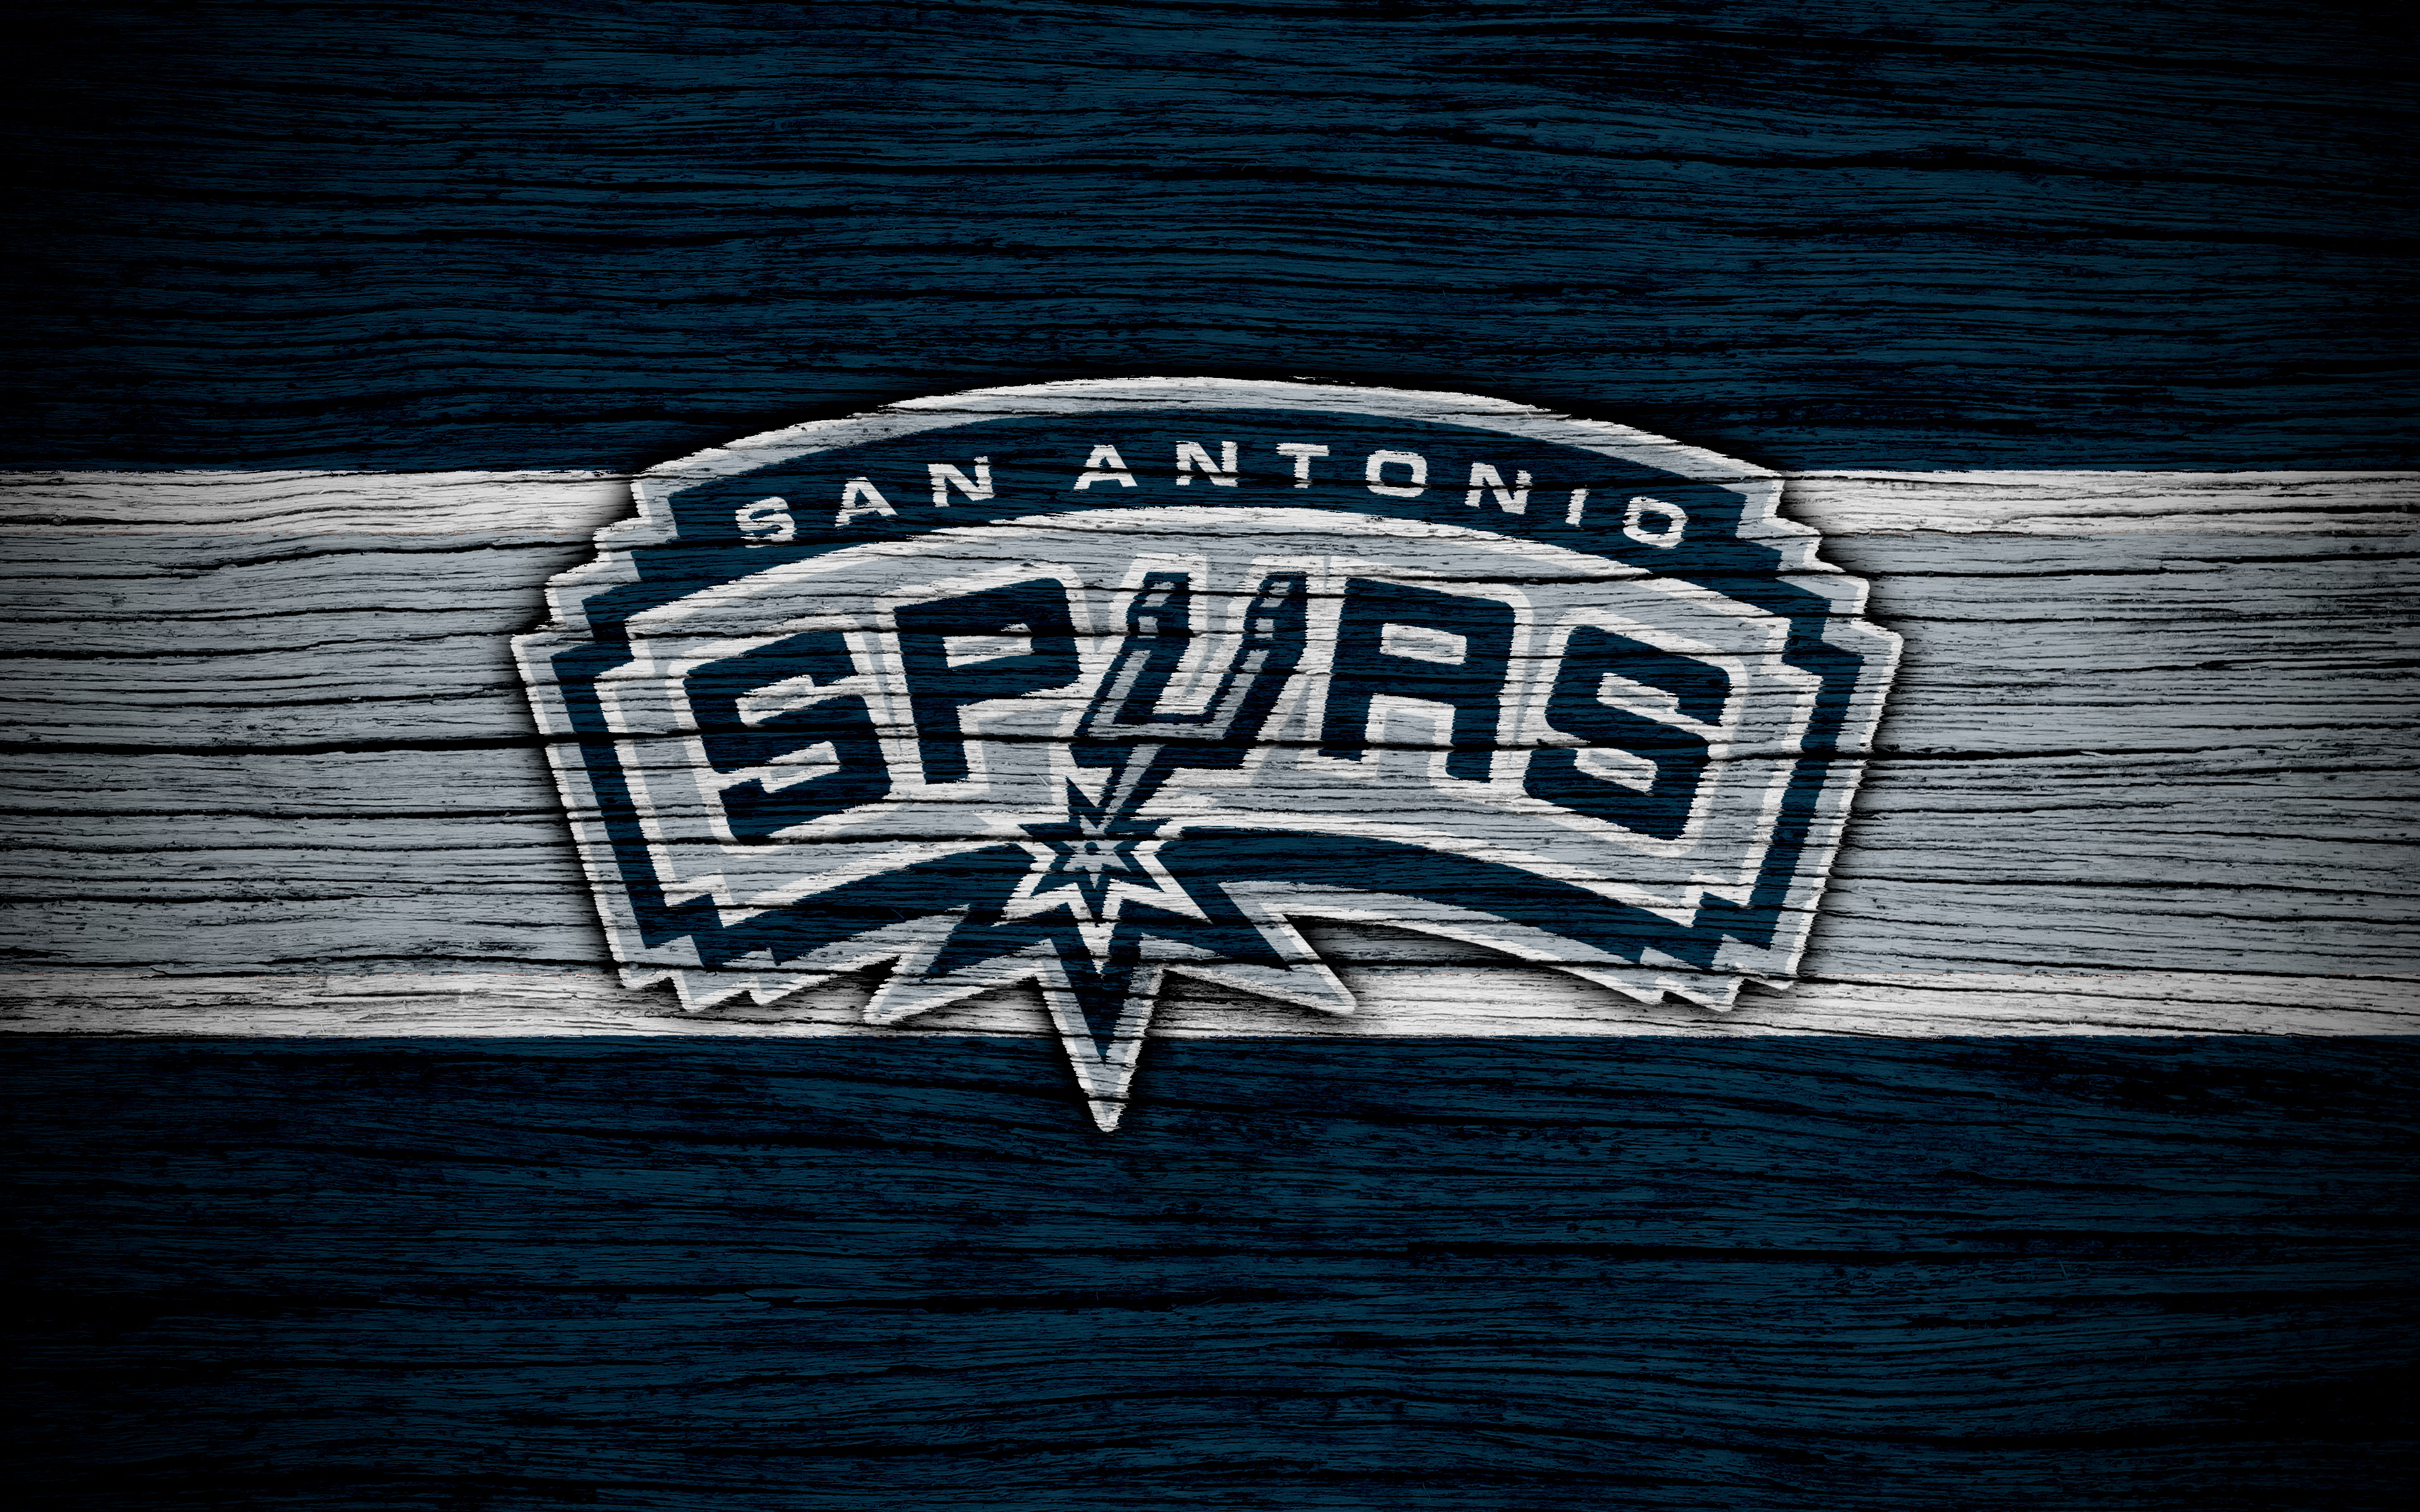 San Antonio Spurs Logo 4k Ultra HD Wallpaper